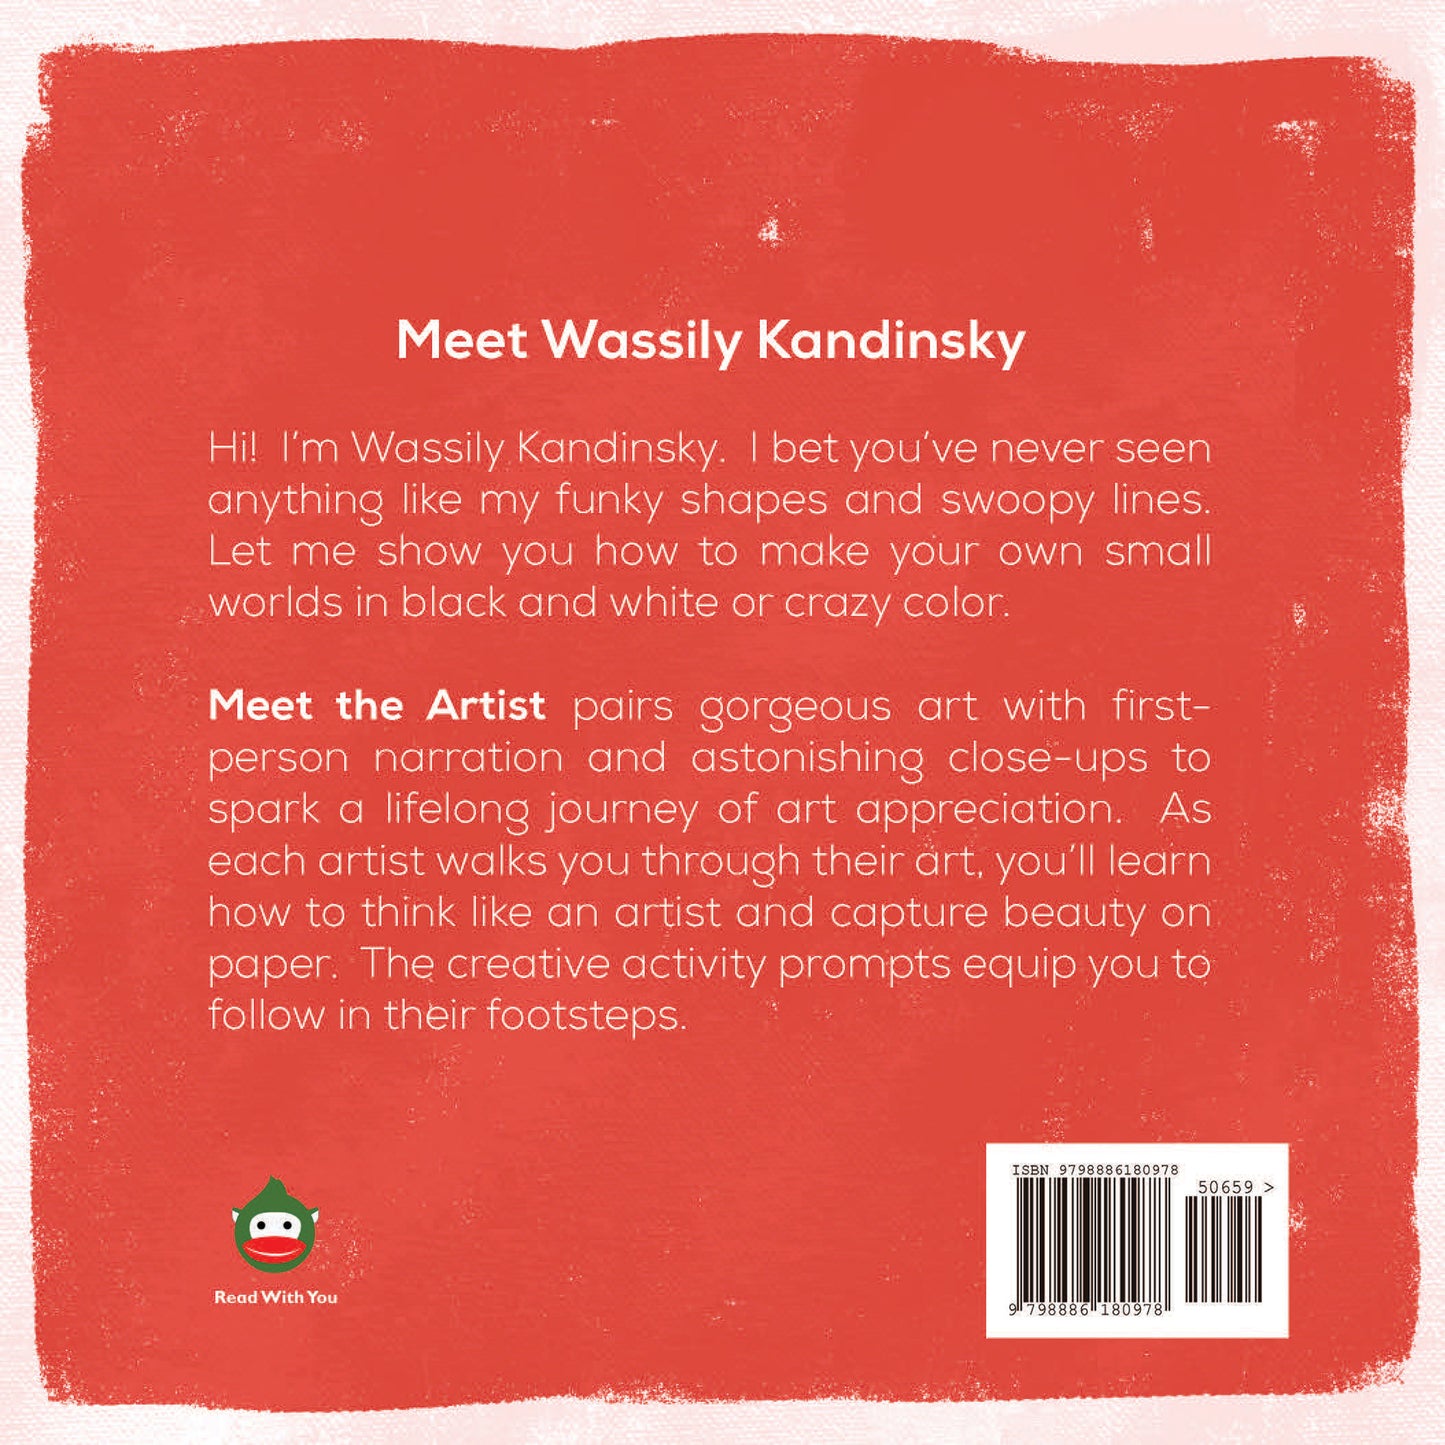 Meet Wassily Kandinsky